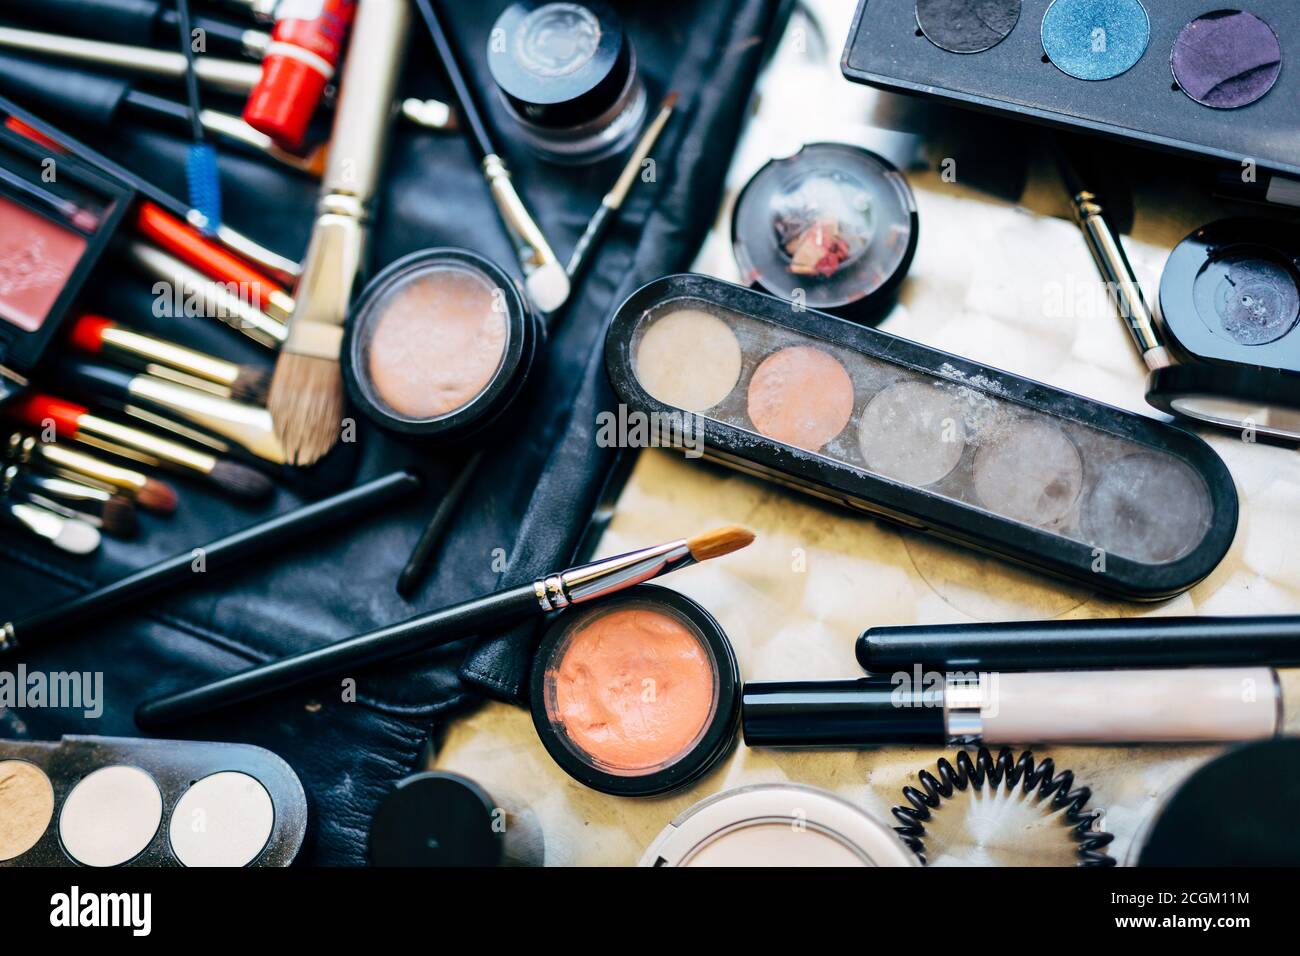 Professionelles Set zum Auftragen von Make-up mit Pinsel,  Lidschatten-Palette und Mascara auf dem Tisch verstreut. Make-up Artist Set  Stockfotografie - Alamy